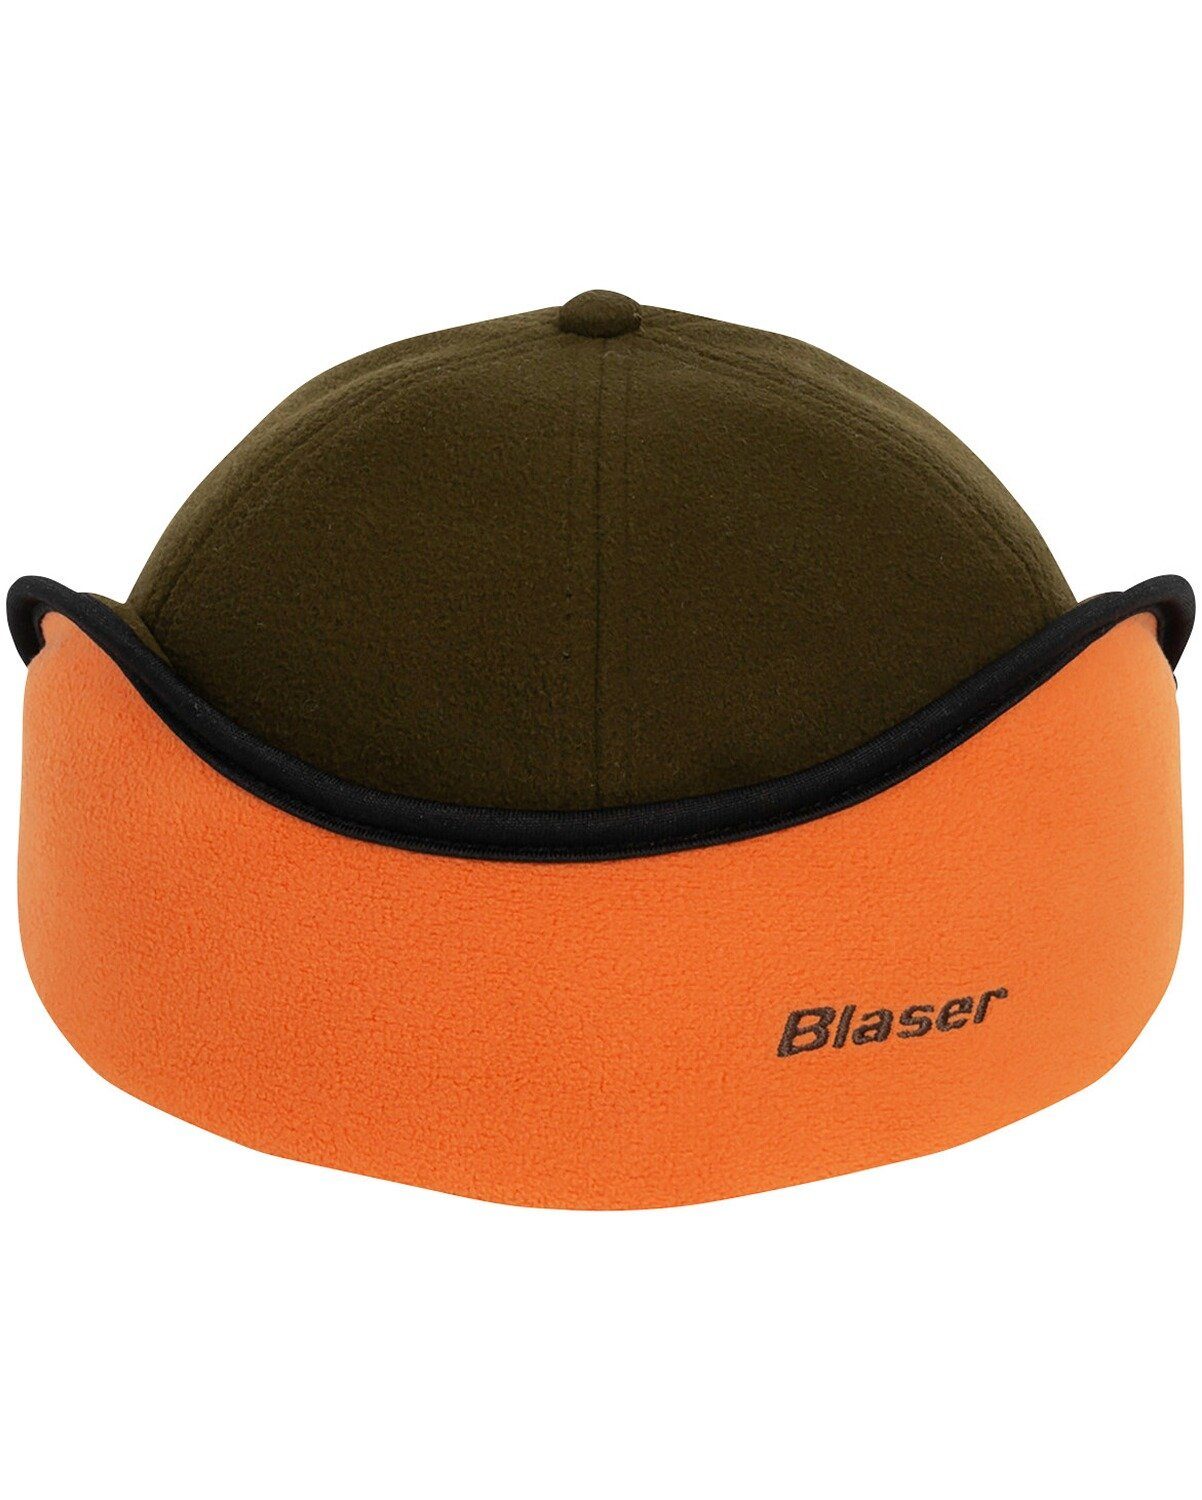 Blaser Baseball Insulated Winter Cap Fleece-Cap